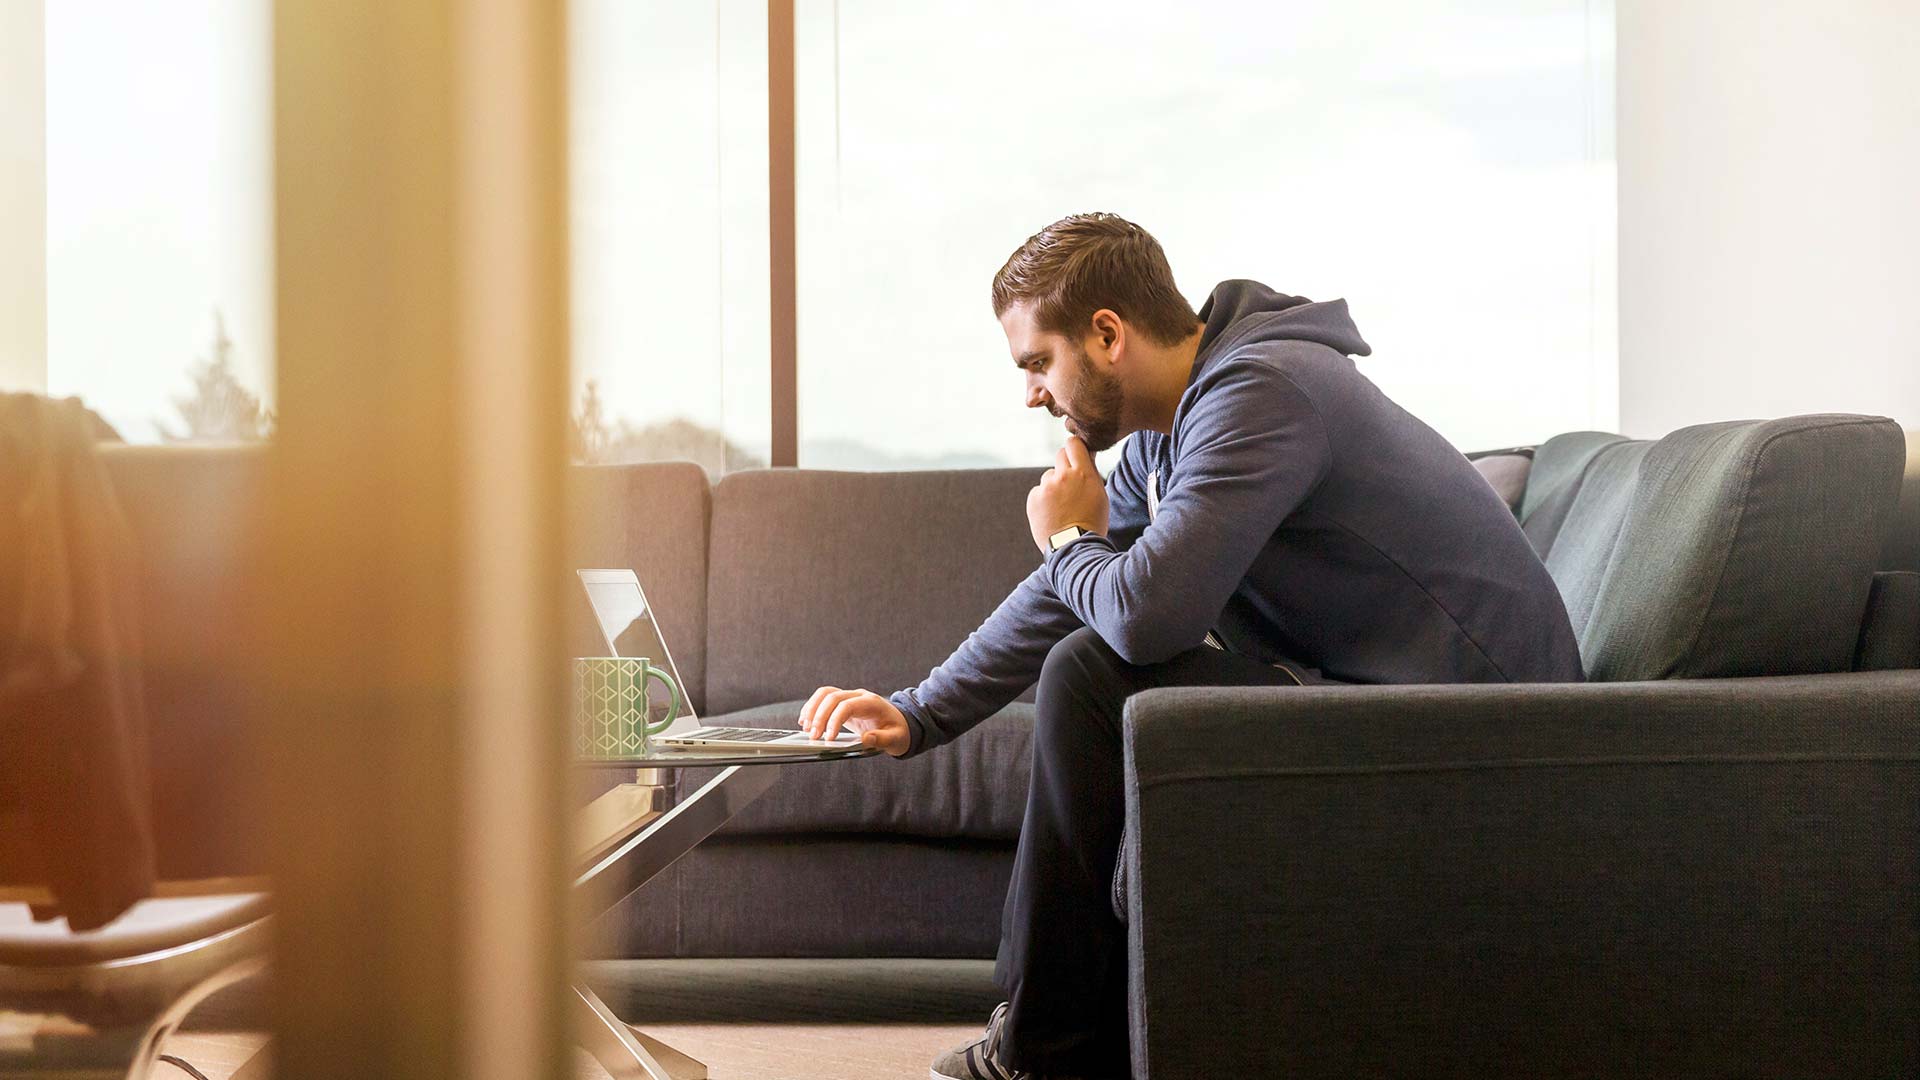 Asesoría y gestoría para emprendedores. Chico joven sentado en un sofá mirando la pantalla de un ordenador.